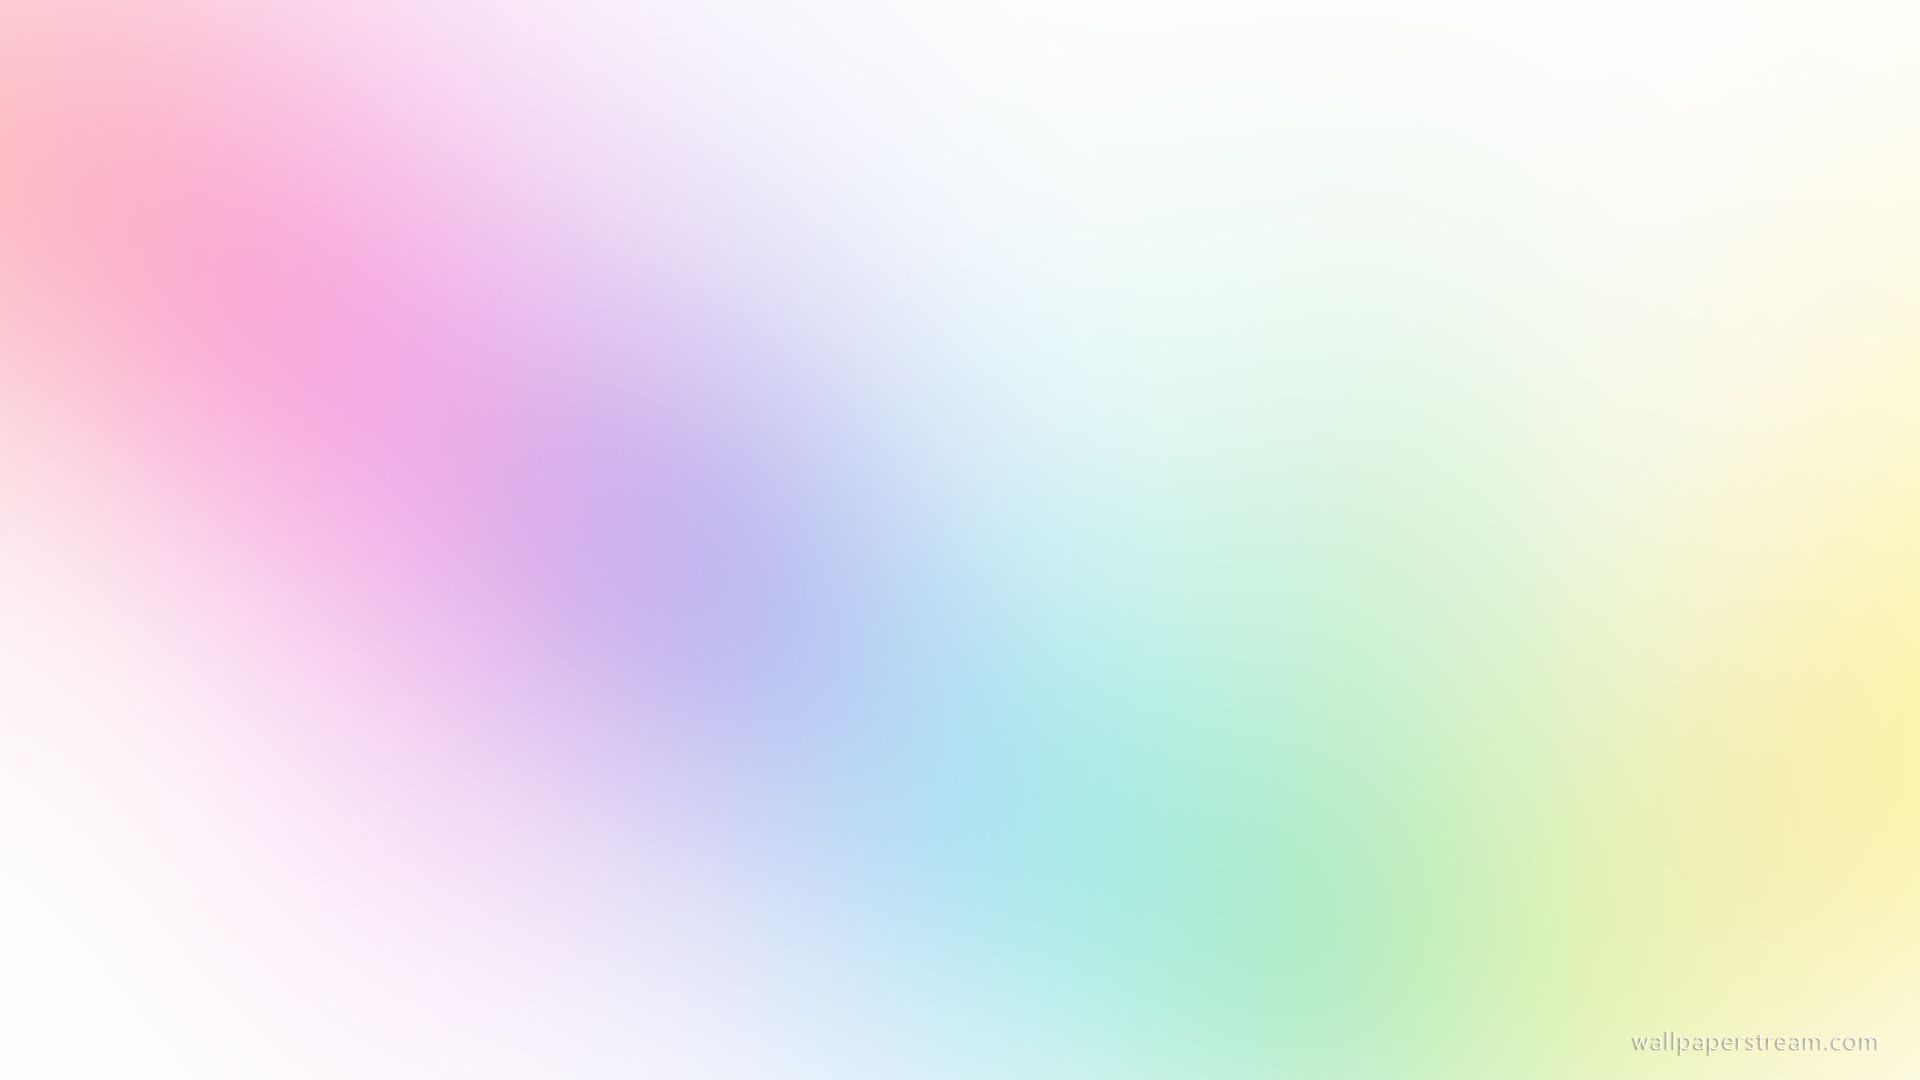 Soft Gradient Blur Wallpaper - Streaming de fondo de pantalla